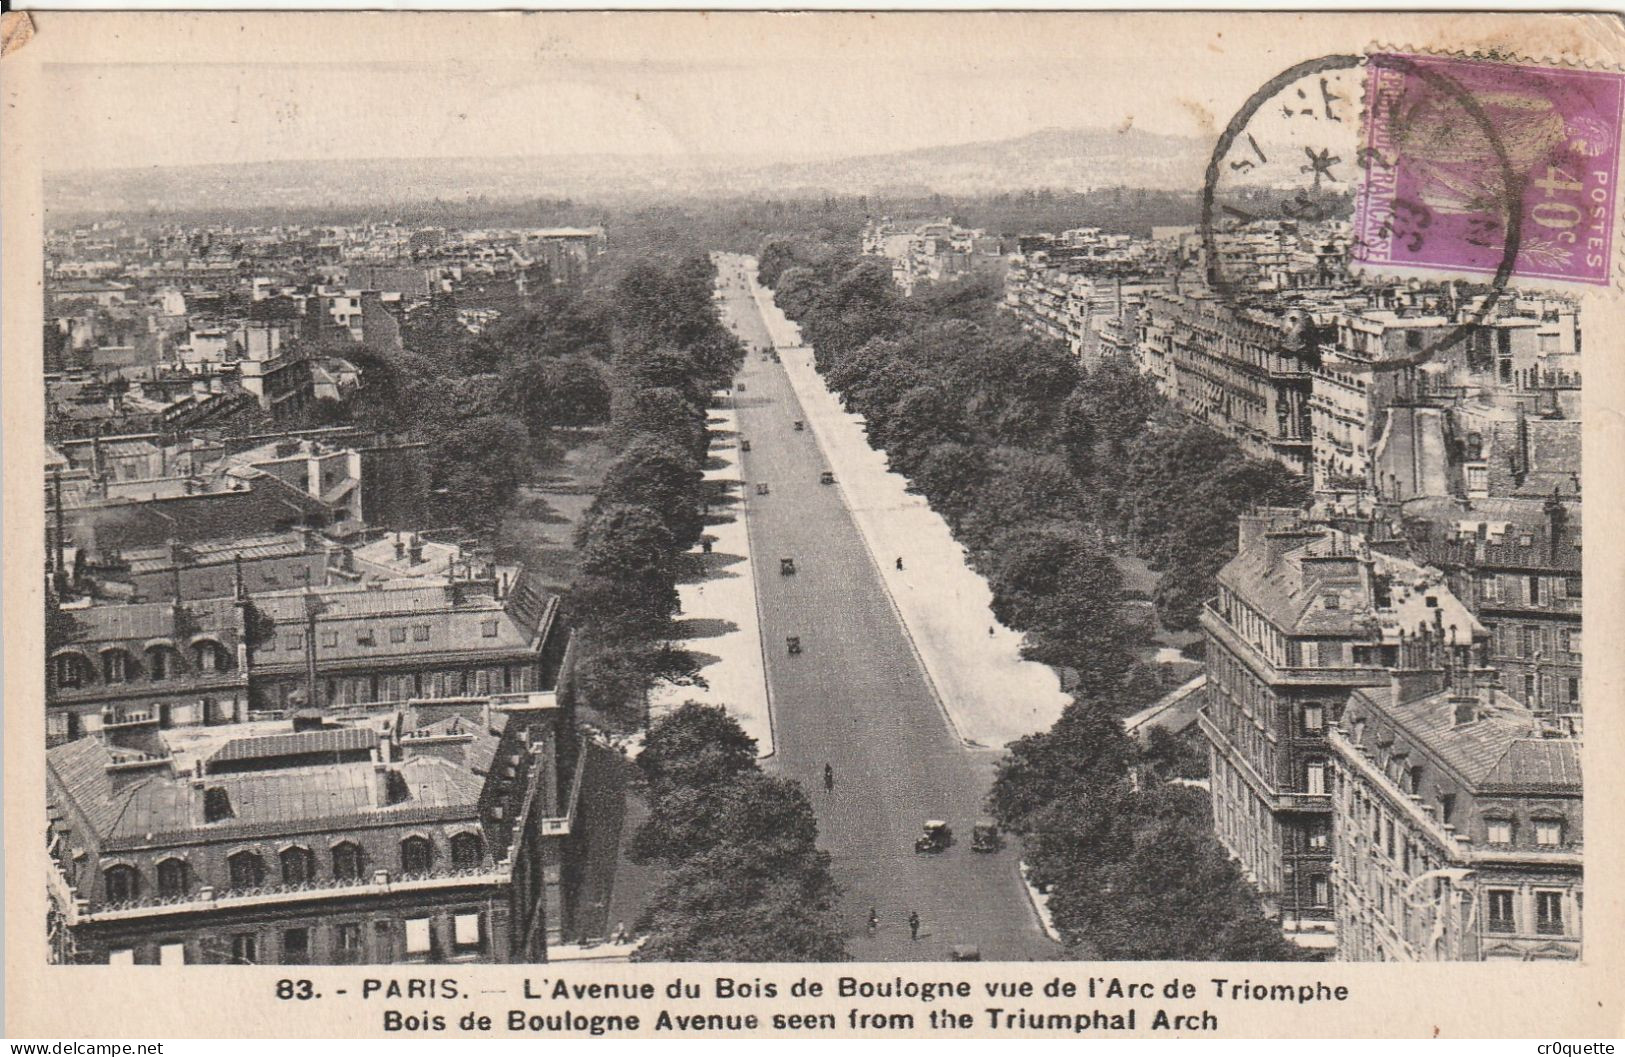 # 75000 PARIS / CHAMPS ELYSEES  en 19 CARTES POSTALES de 1902 à 1950